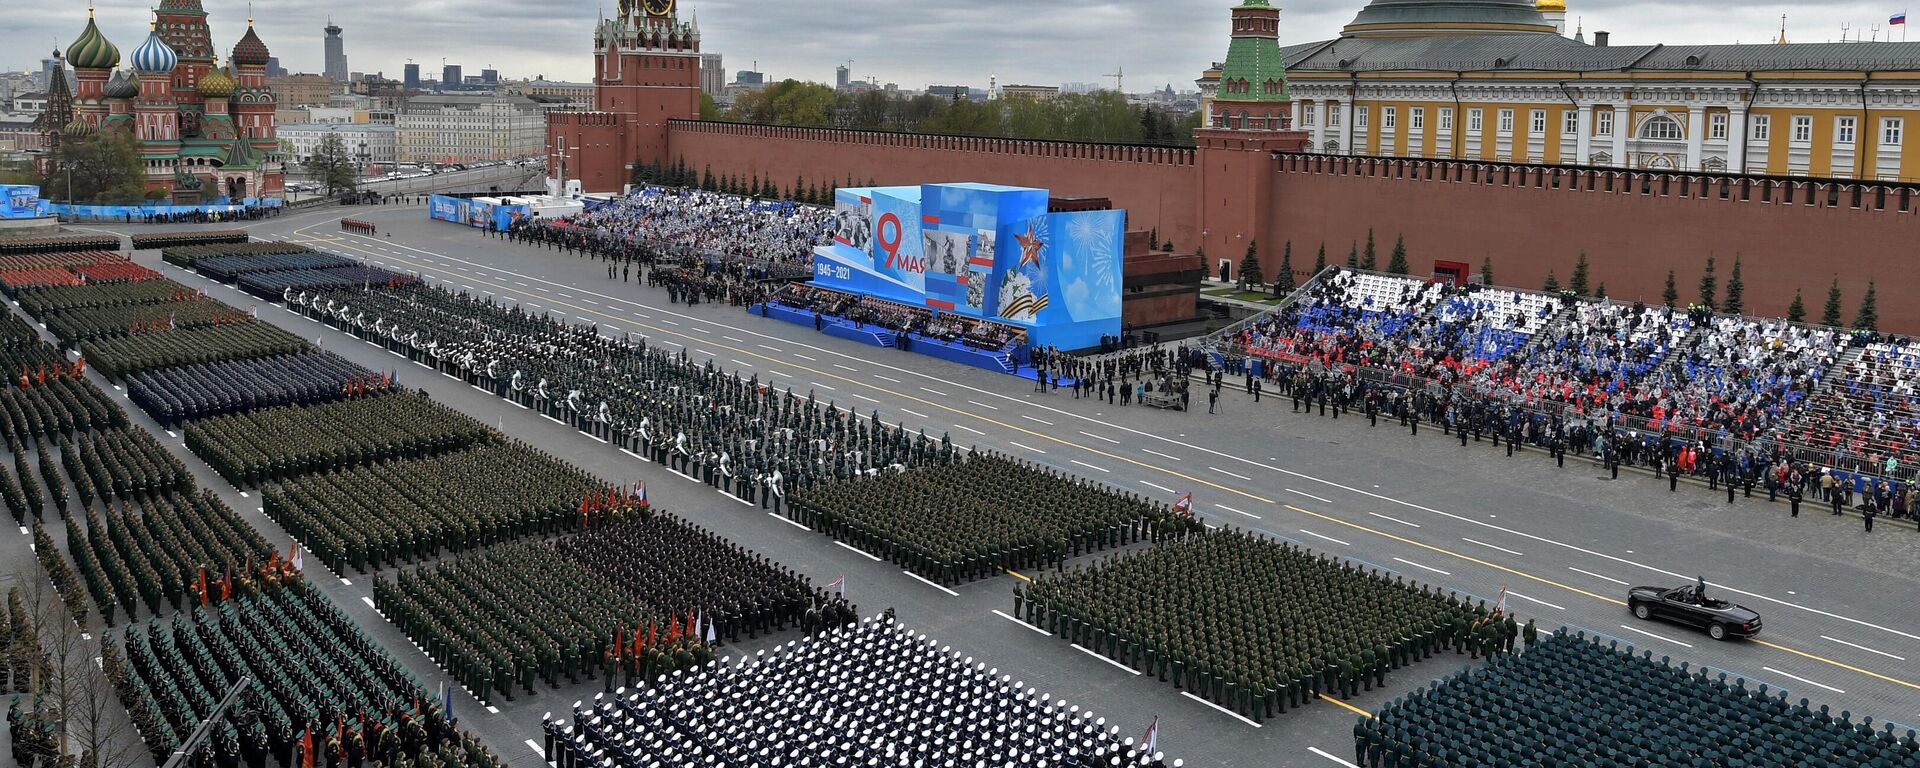 El desfile militar dedicado al 76 aniversario de la victoria en la Gran Guerra Patria en Moscú - Sputnik Mundo, 1920, 09.05.2021